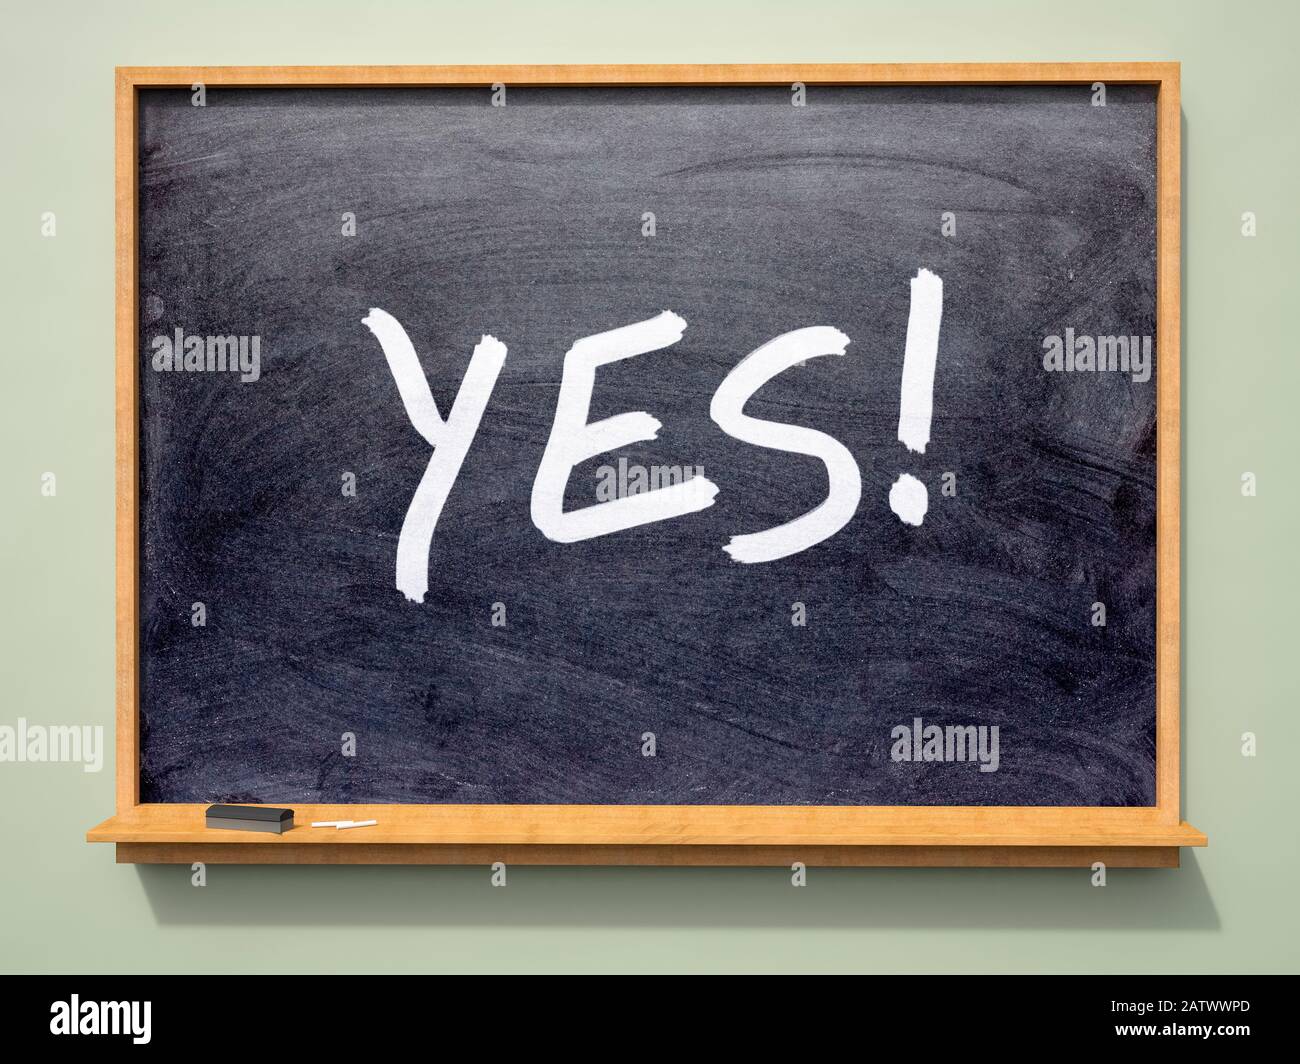 School blackboard with 'YES!' written on it Stock Photo